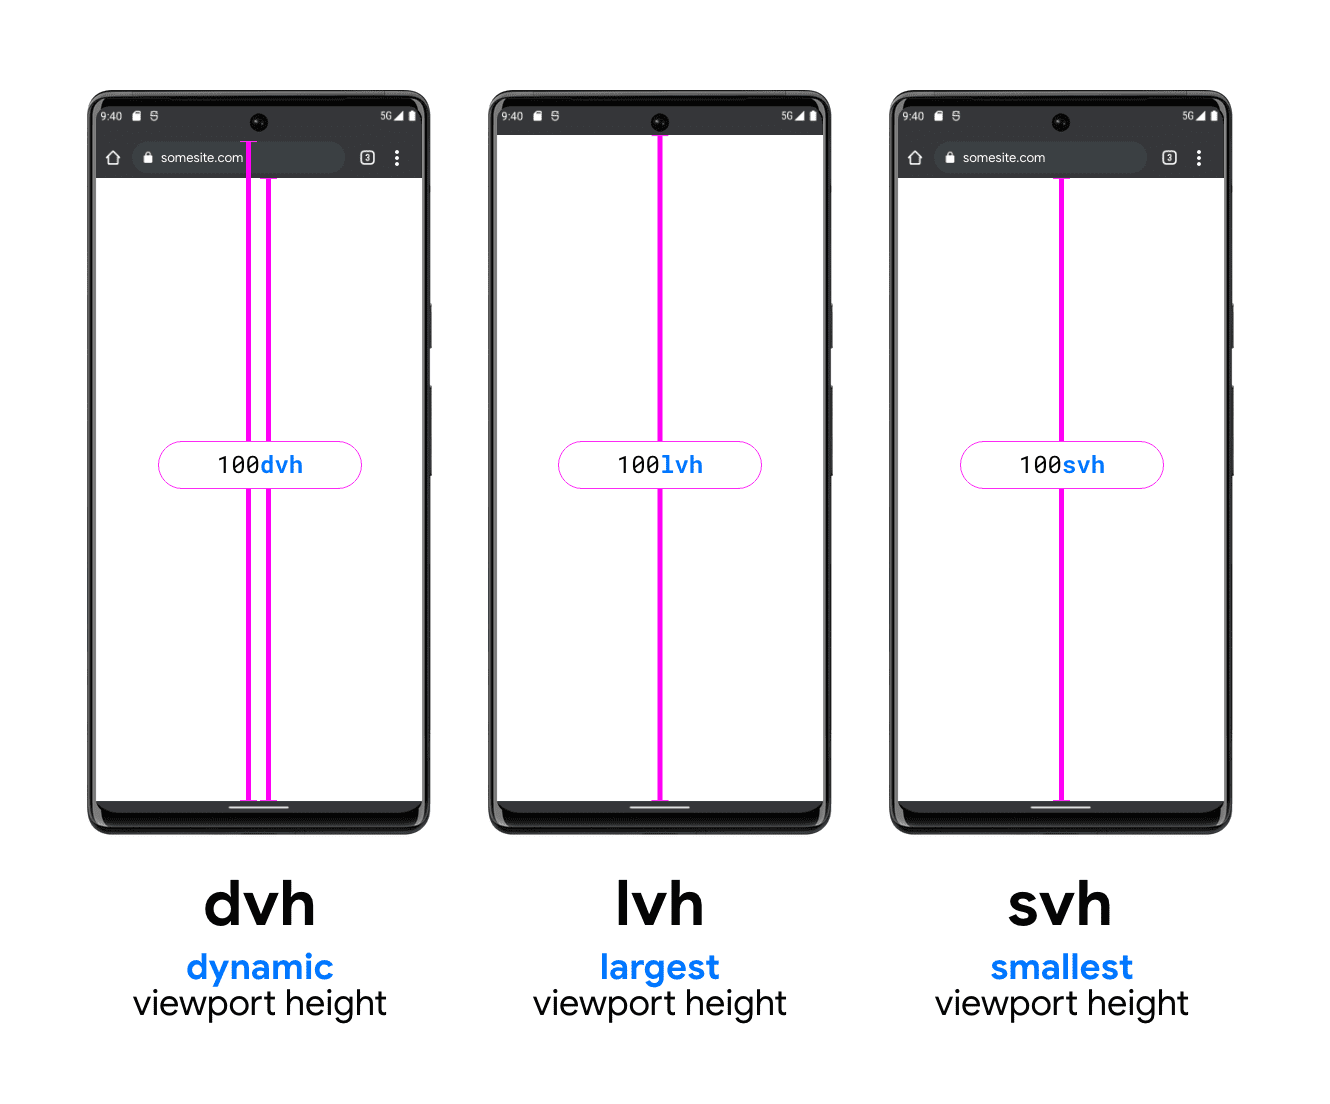 גרפיקה עם שלושה טלפונים כדי להמחיש את DVH, LVH ו-SVH. לטלפון לדוגמה של DVH יש שני קווים אנכיים: האחד בין החלק התחתון של סרגל החיפוש לבין החלק התחתון של אזור התצוגה, ואחד בין סרגל החיפוש (מתחת לשורת הסטטוס של המערכת) לתחתית אזור התצוגה. מראה איך DVH יכול להיות באחד משני האורכים האלה. LVH מוצג באמצע עם שורה אחת בין
   החלק התחתון של שורת הסטטוס של המכשיר לבין הלחצן של אזור התצוגה של הטלפון. הדוגמה האחרונה היא
   דוגמה ליחידת SVH, שבה מופיעה שורה מתחתית סרגל החיפוש בדפדפן
   לחלק התחתון של אזור התצוגה.